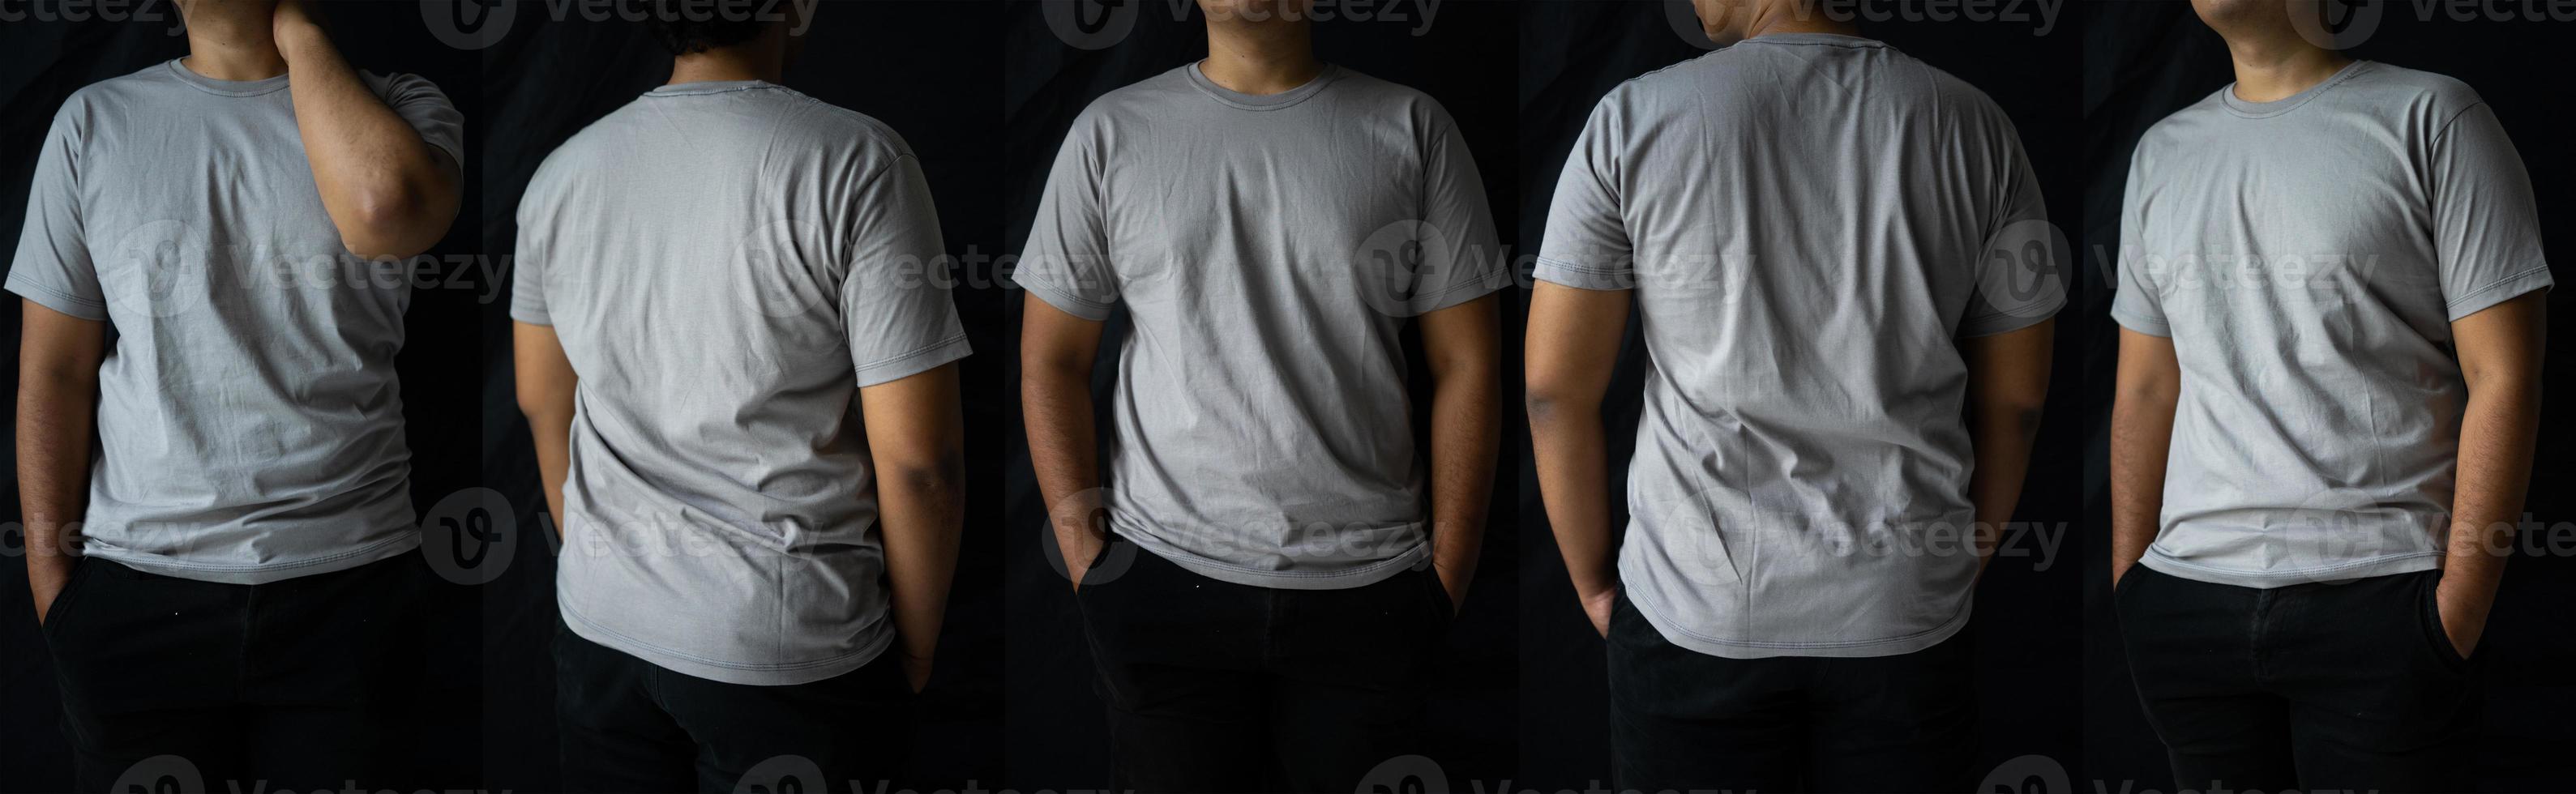 los hombres con estilo usan camisetas sencillas para maquetas. el diseño de la camiseta en blanco se muestra en la parte trasera y delantera. foto